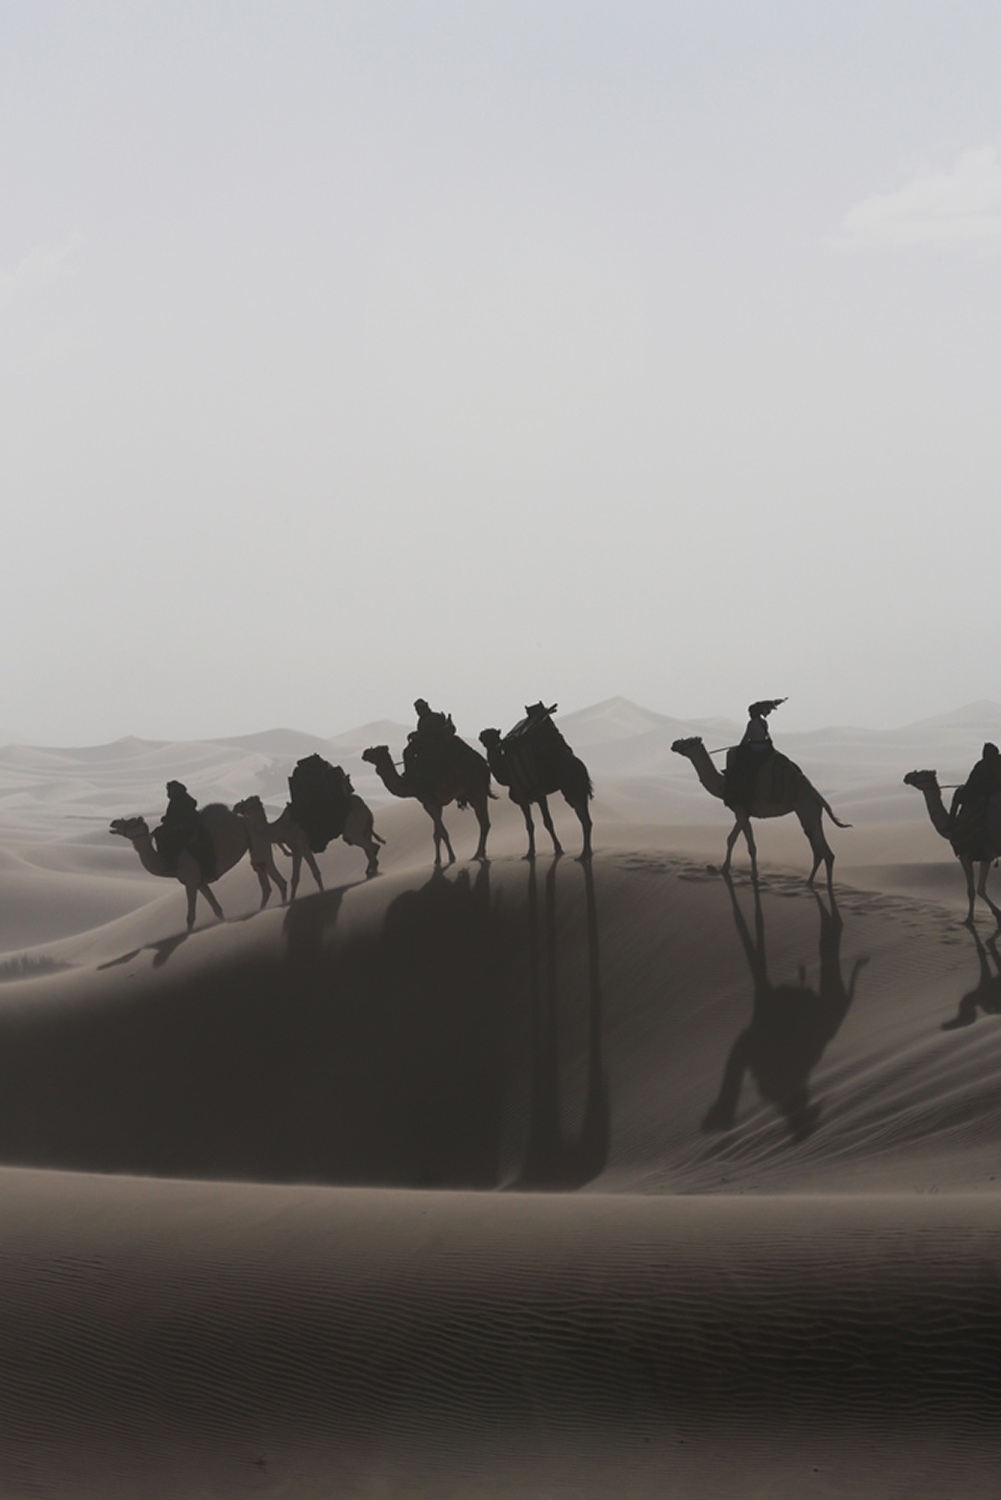 Sechs Kamele werden durch die Wüste geritten, sie stehen auf dem Hang einer Düne und die Sonne wirft die Schatten ins Tal.